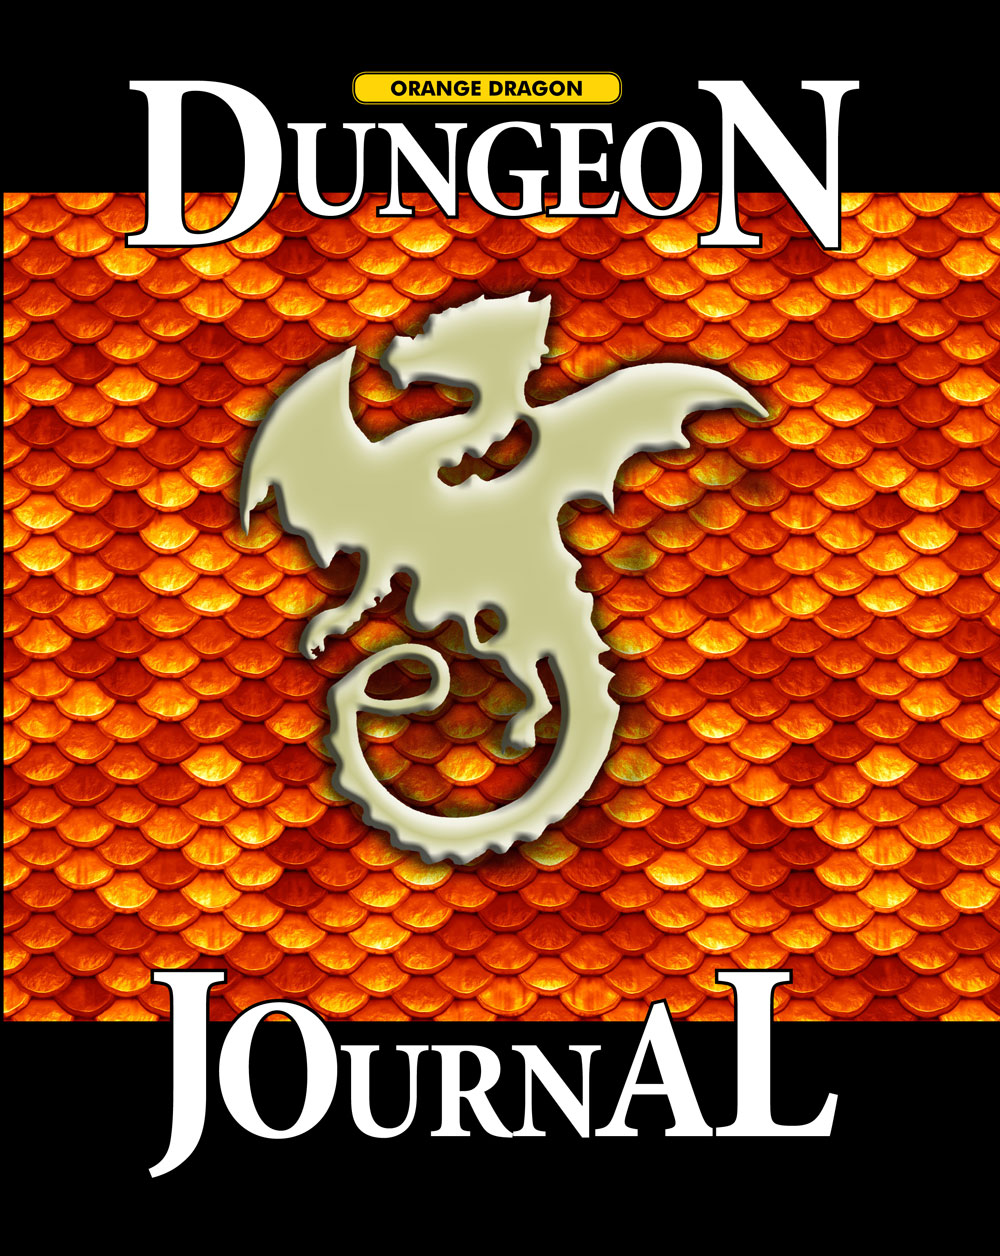 Orange Dragon Dungeon Journal